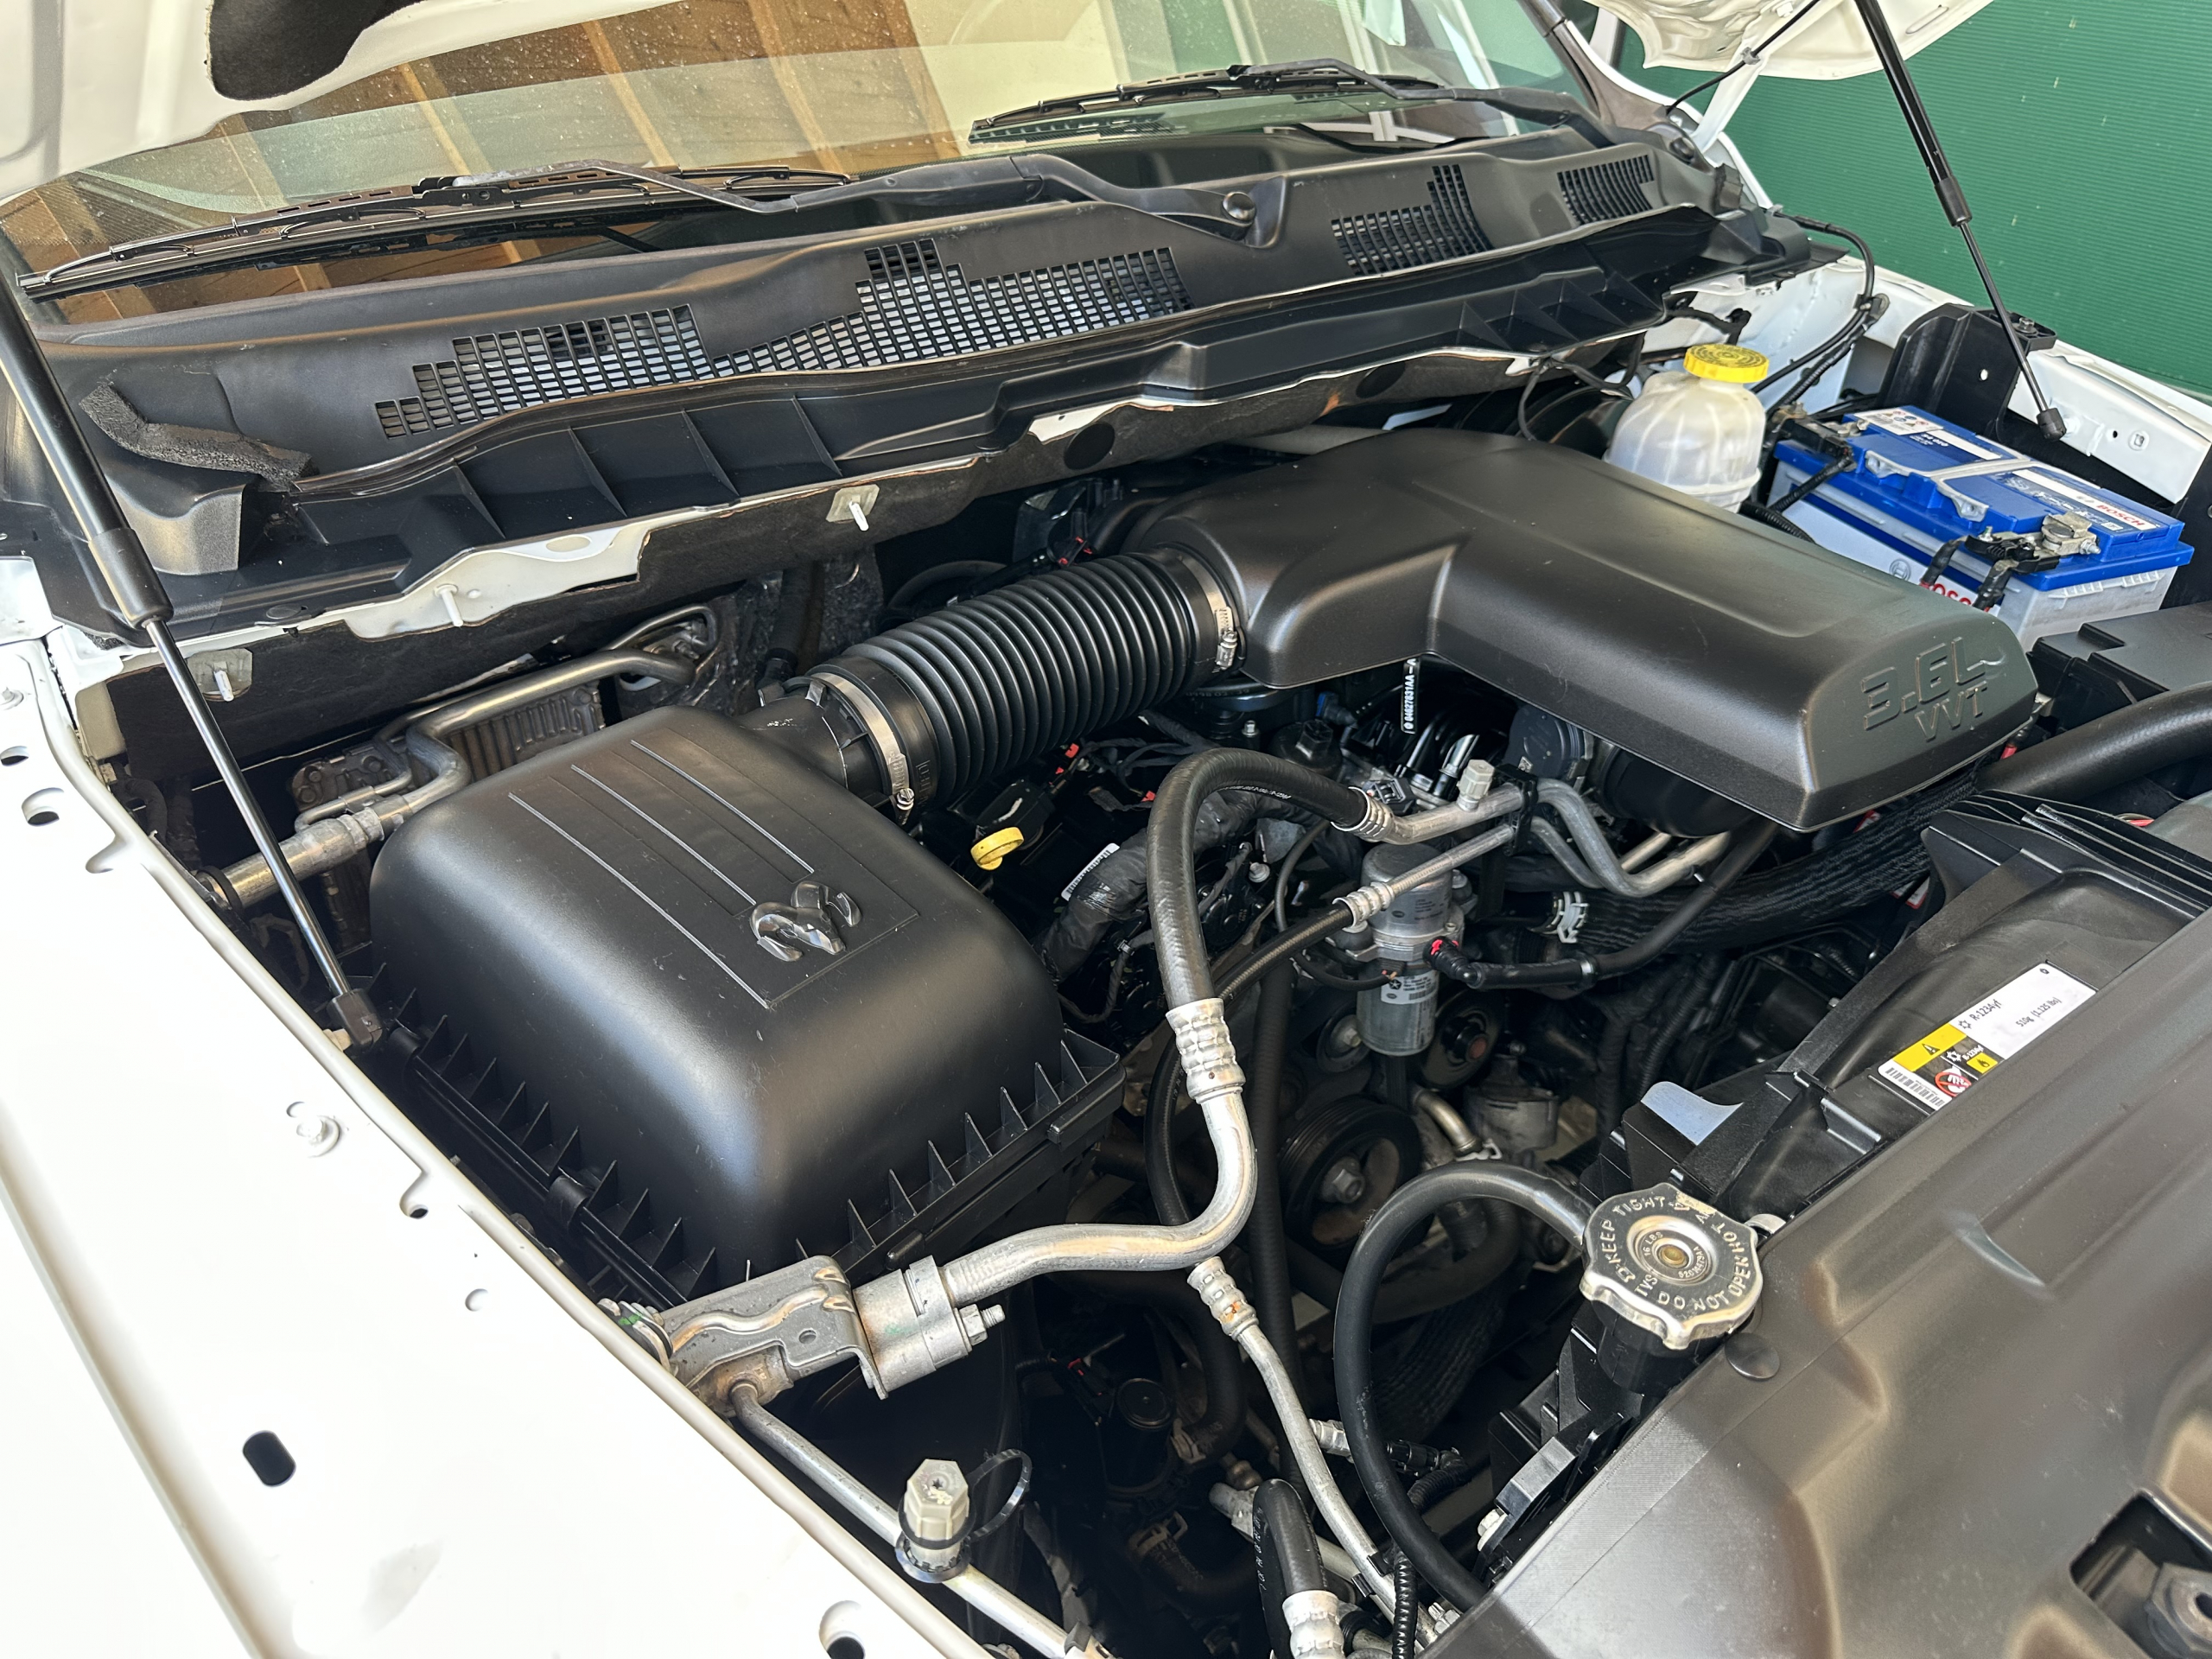 2018 Dodge Ram 1500 4x4 zu verkaufen St. Gallen